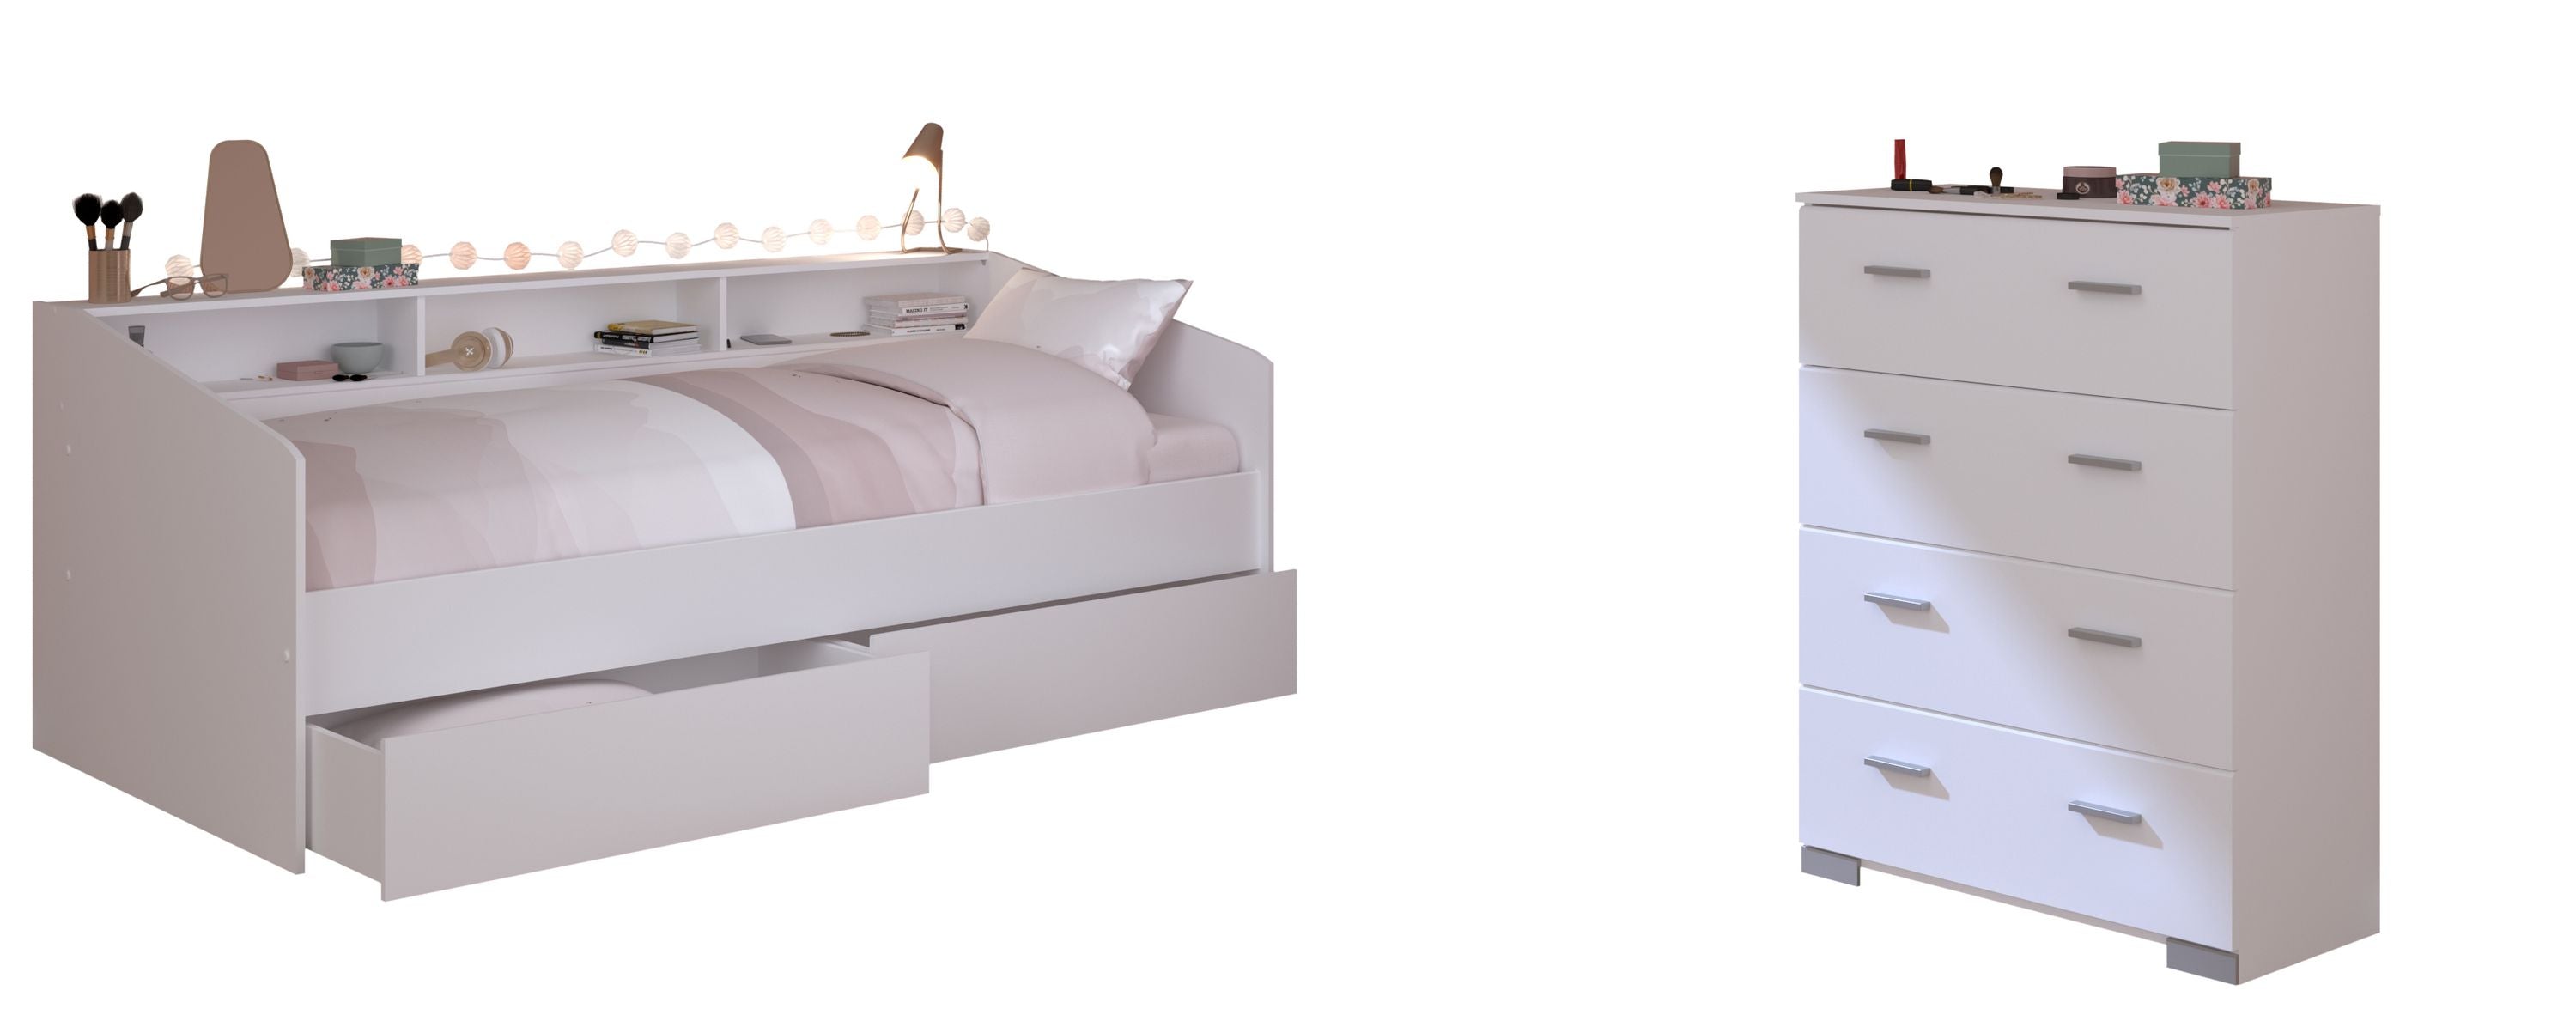 Jugendzimmer Sleep Parisot weiß inkl. Bett + 2 Bettkästen + weitere passende Möbel